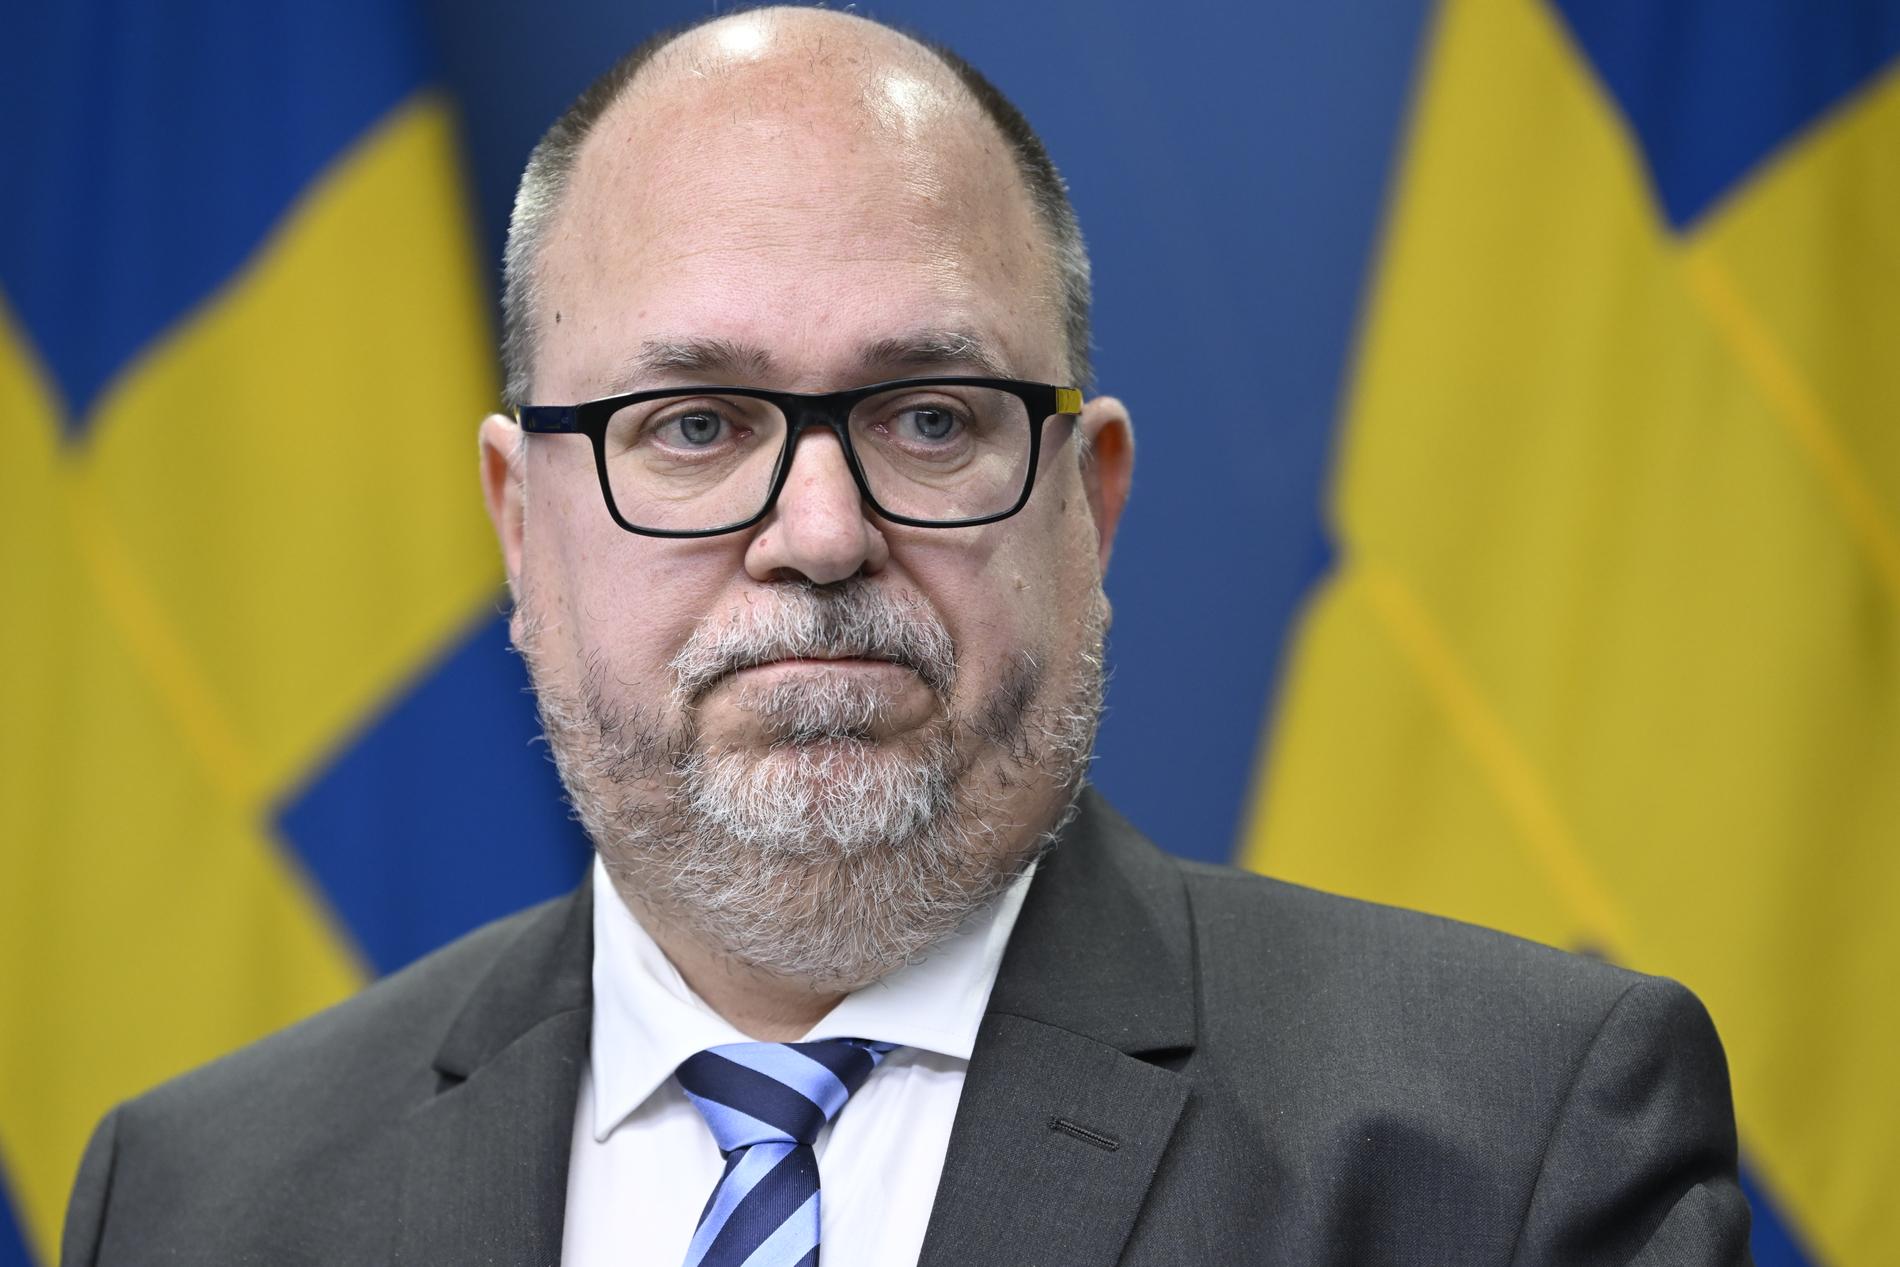 Näringsminister Karl-Petter Thorwaldsson (S). Arkivbild